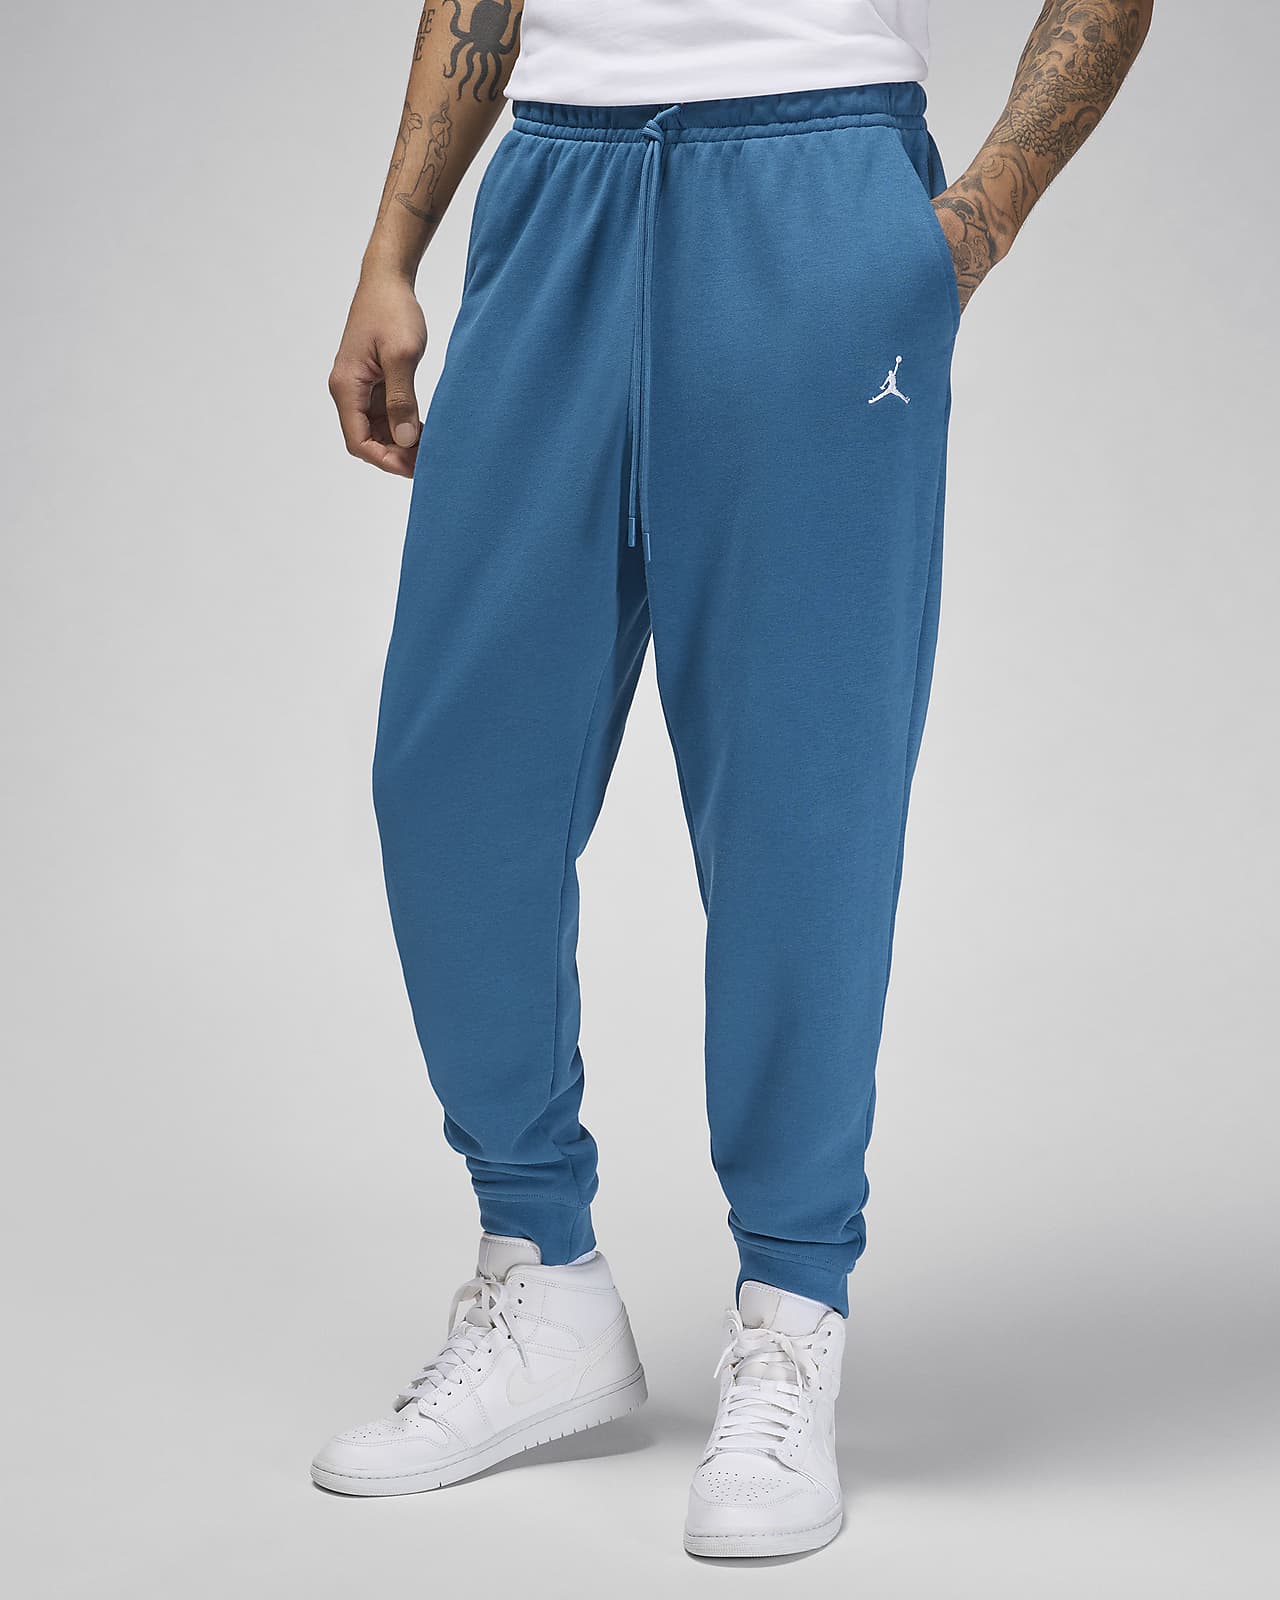 Ανδρικό παντελόνι φλις με ύφανση μπουκλέ στο εσωτερικό Jordan Essentials